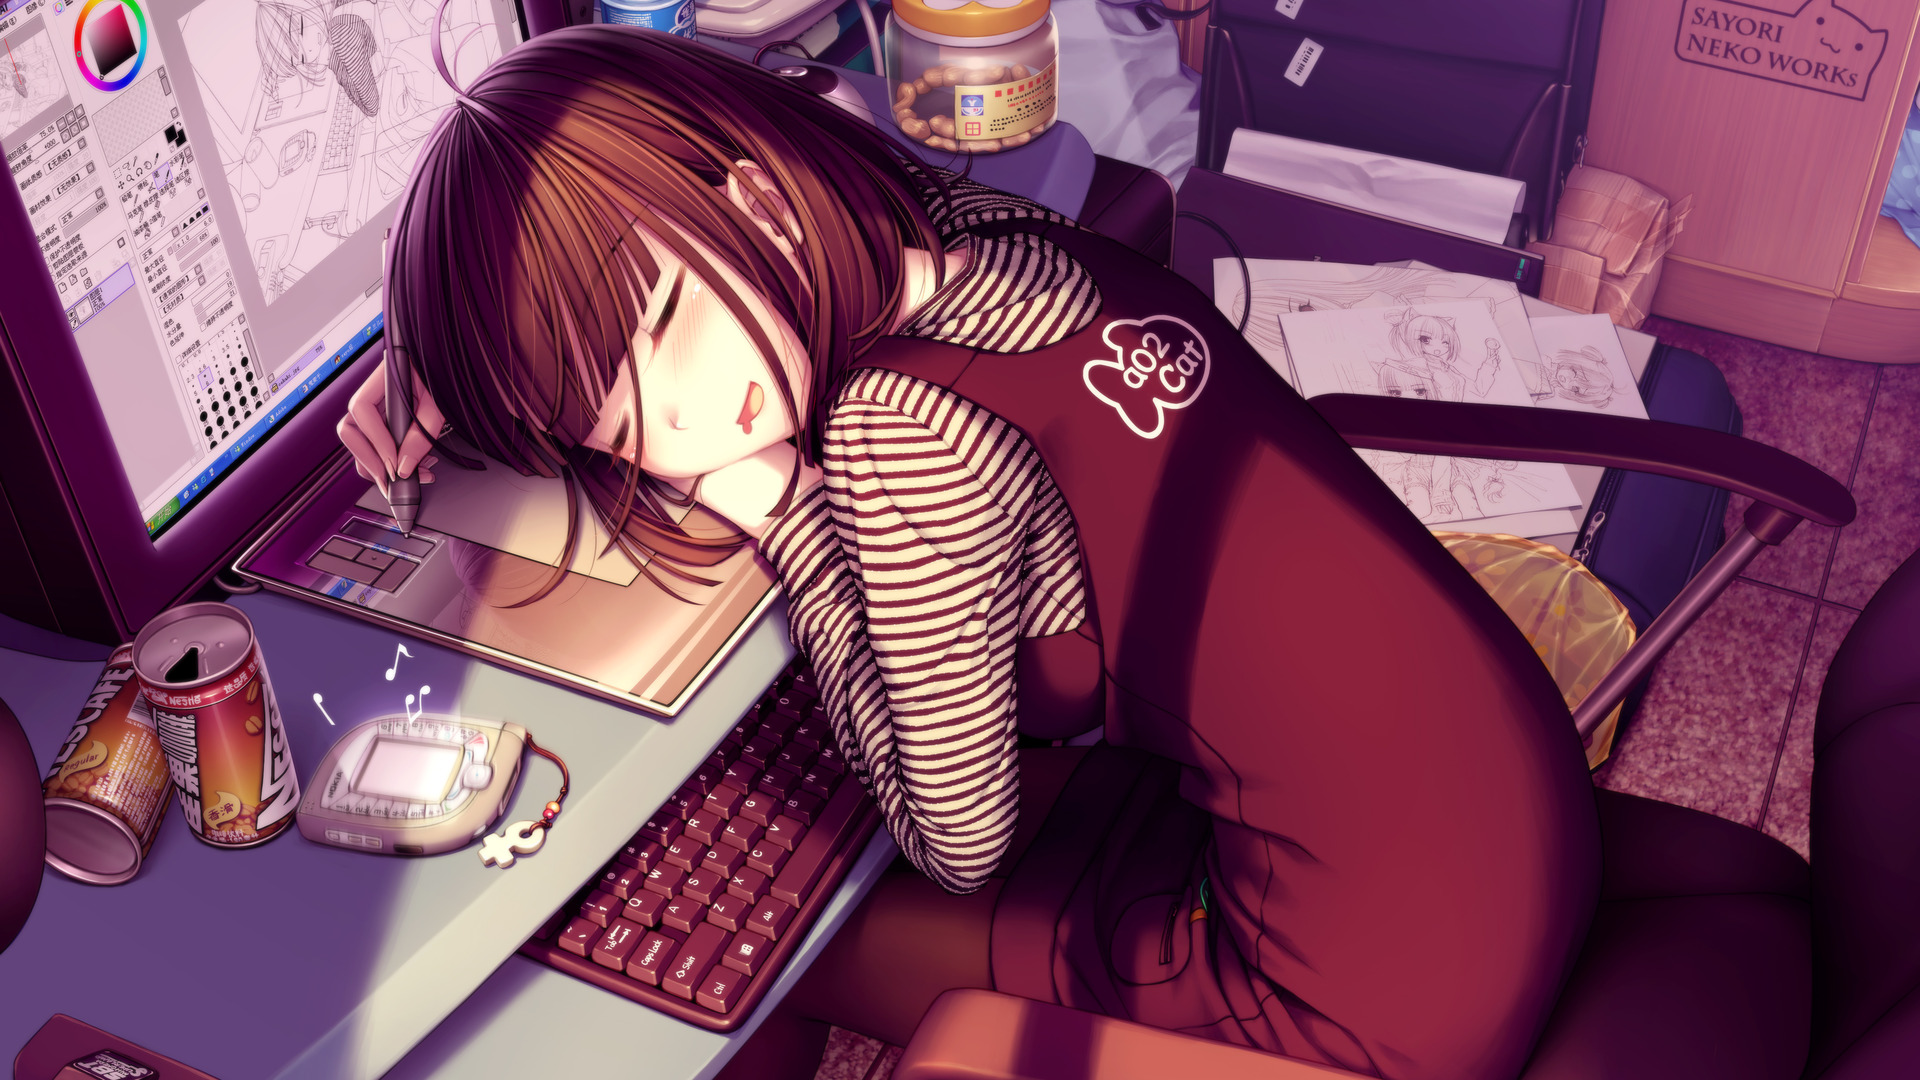 рекурсивный, спальный, Sayori Neko Работы, аниме девушки, Оекаки Musume - обои на рабочий стол